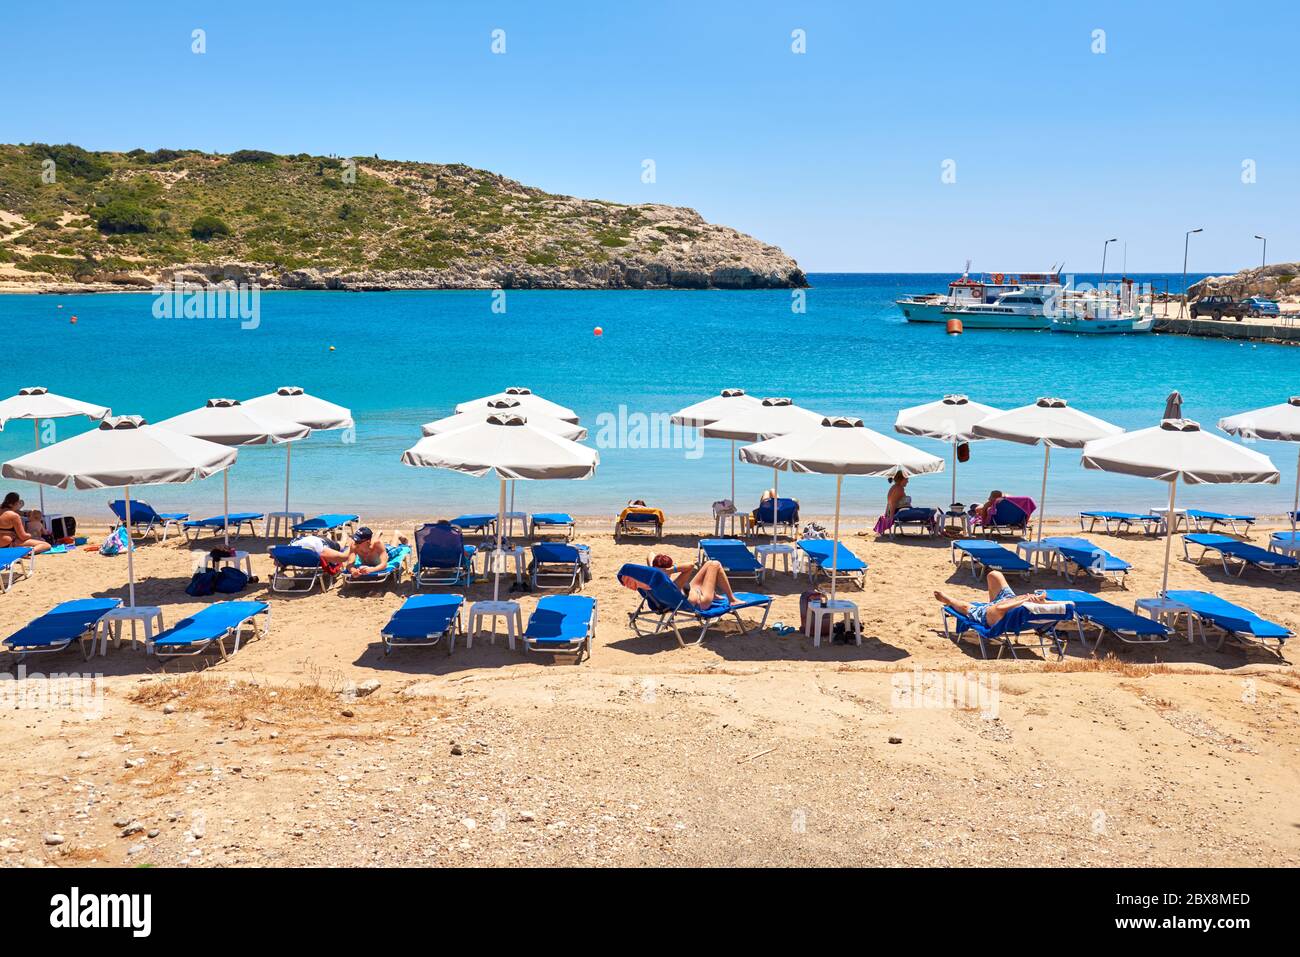 RODI, GRECIA - 12 maggio 2018: Spiaggia sabbiosa e tranquilla nel villaggio di Kolymbia. Isola di Rodi. Grecia Foto Stock